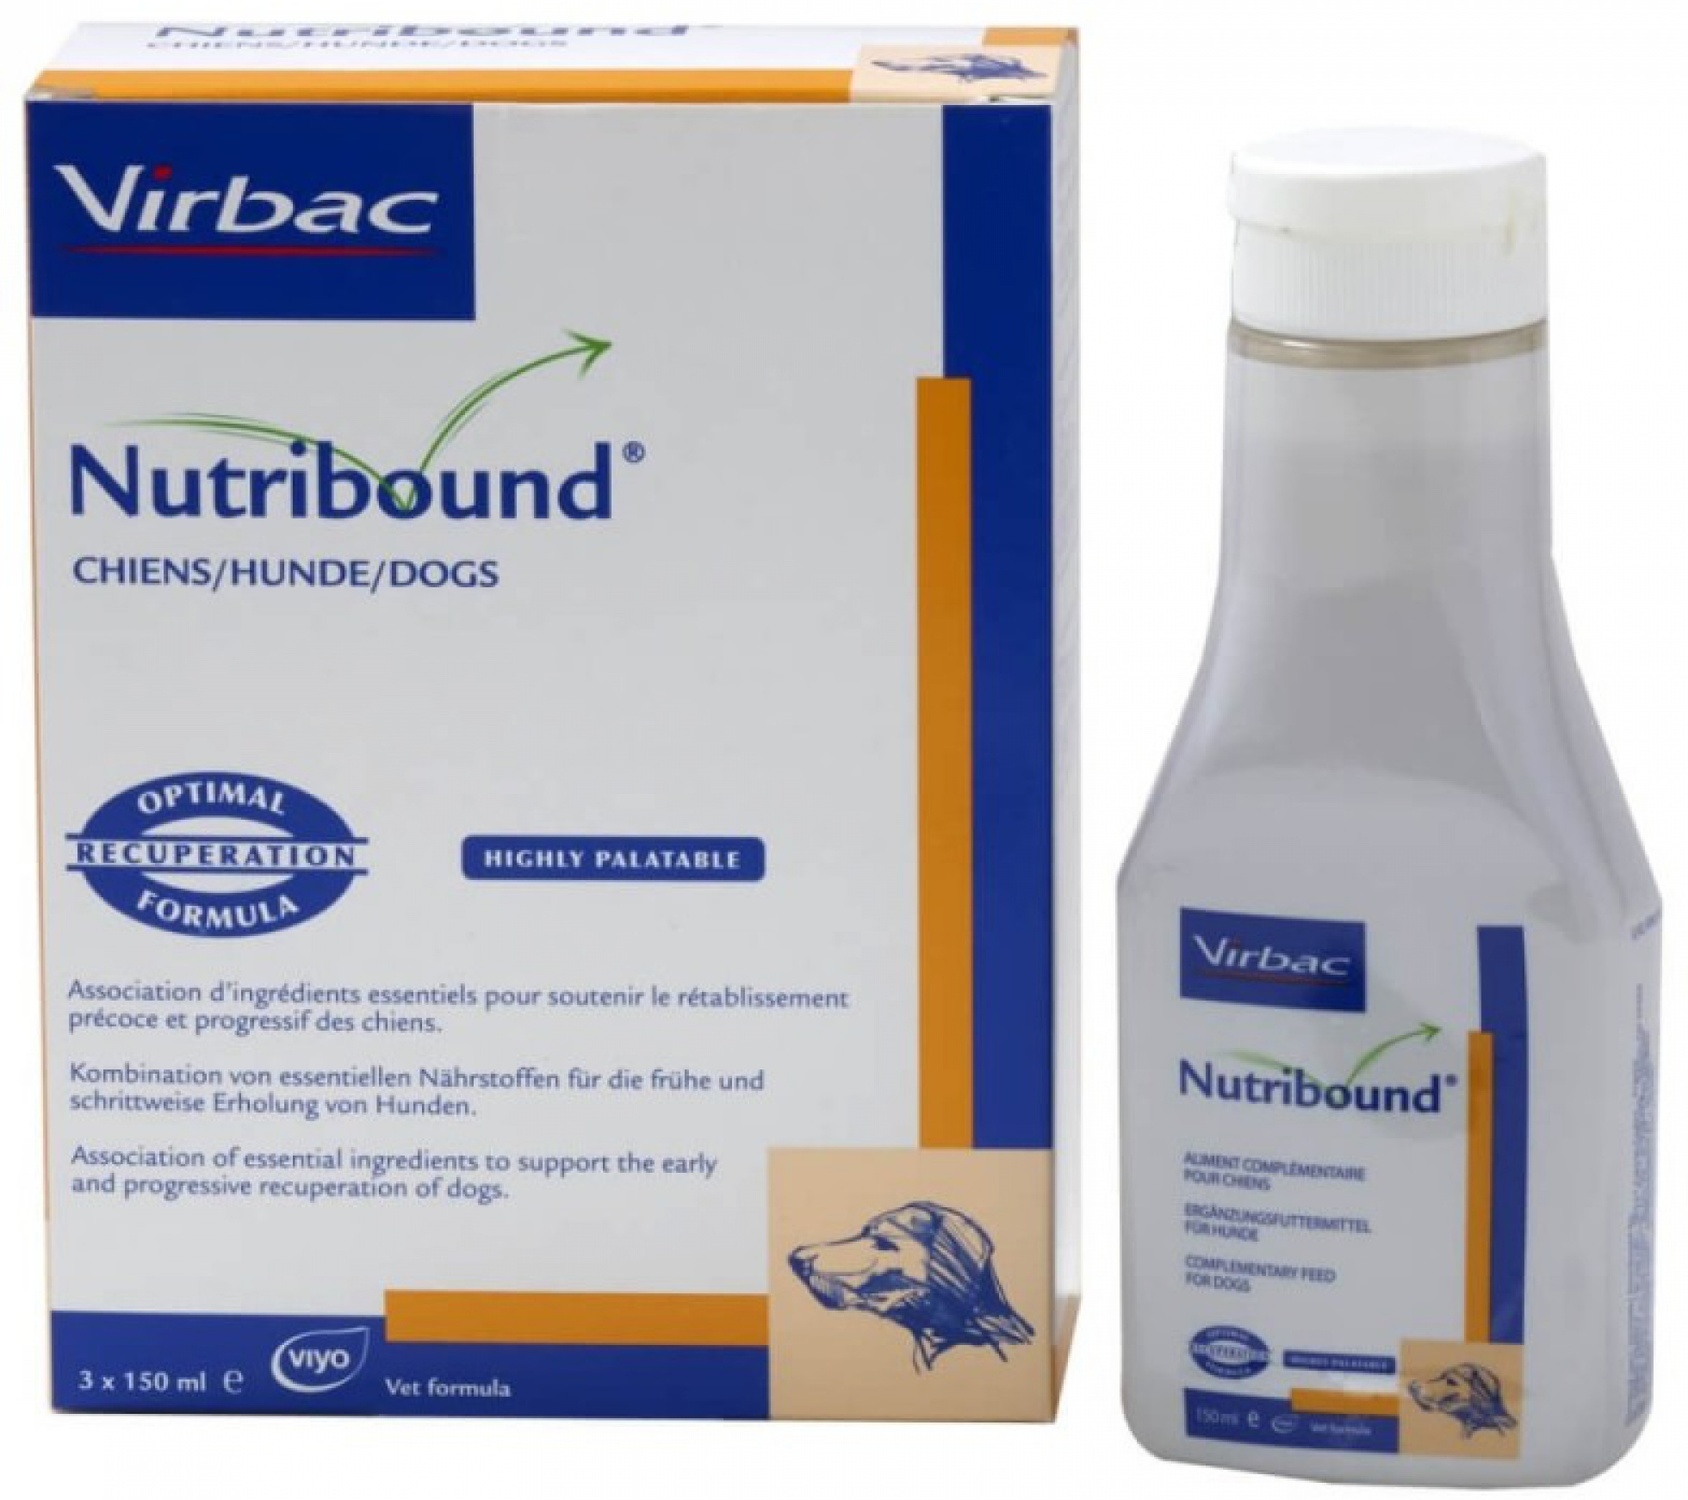 Virbac Nutribound soluție orală aromatizată pentru câini